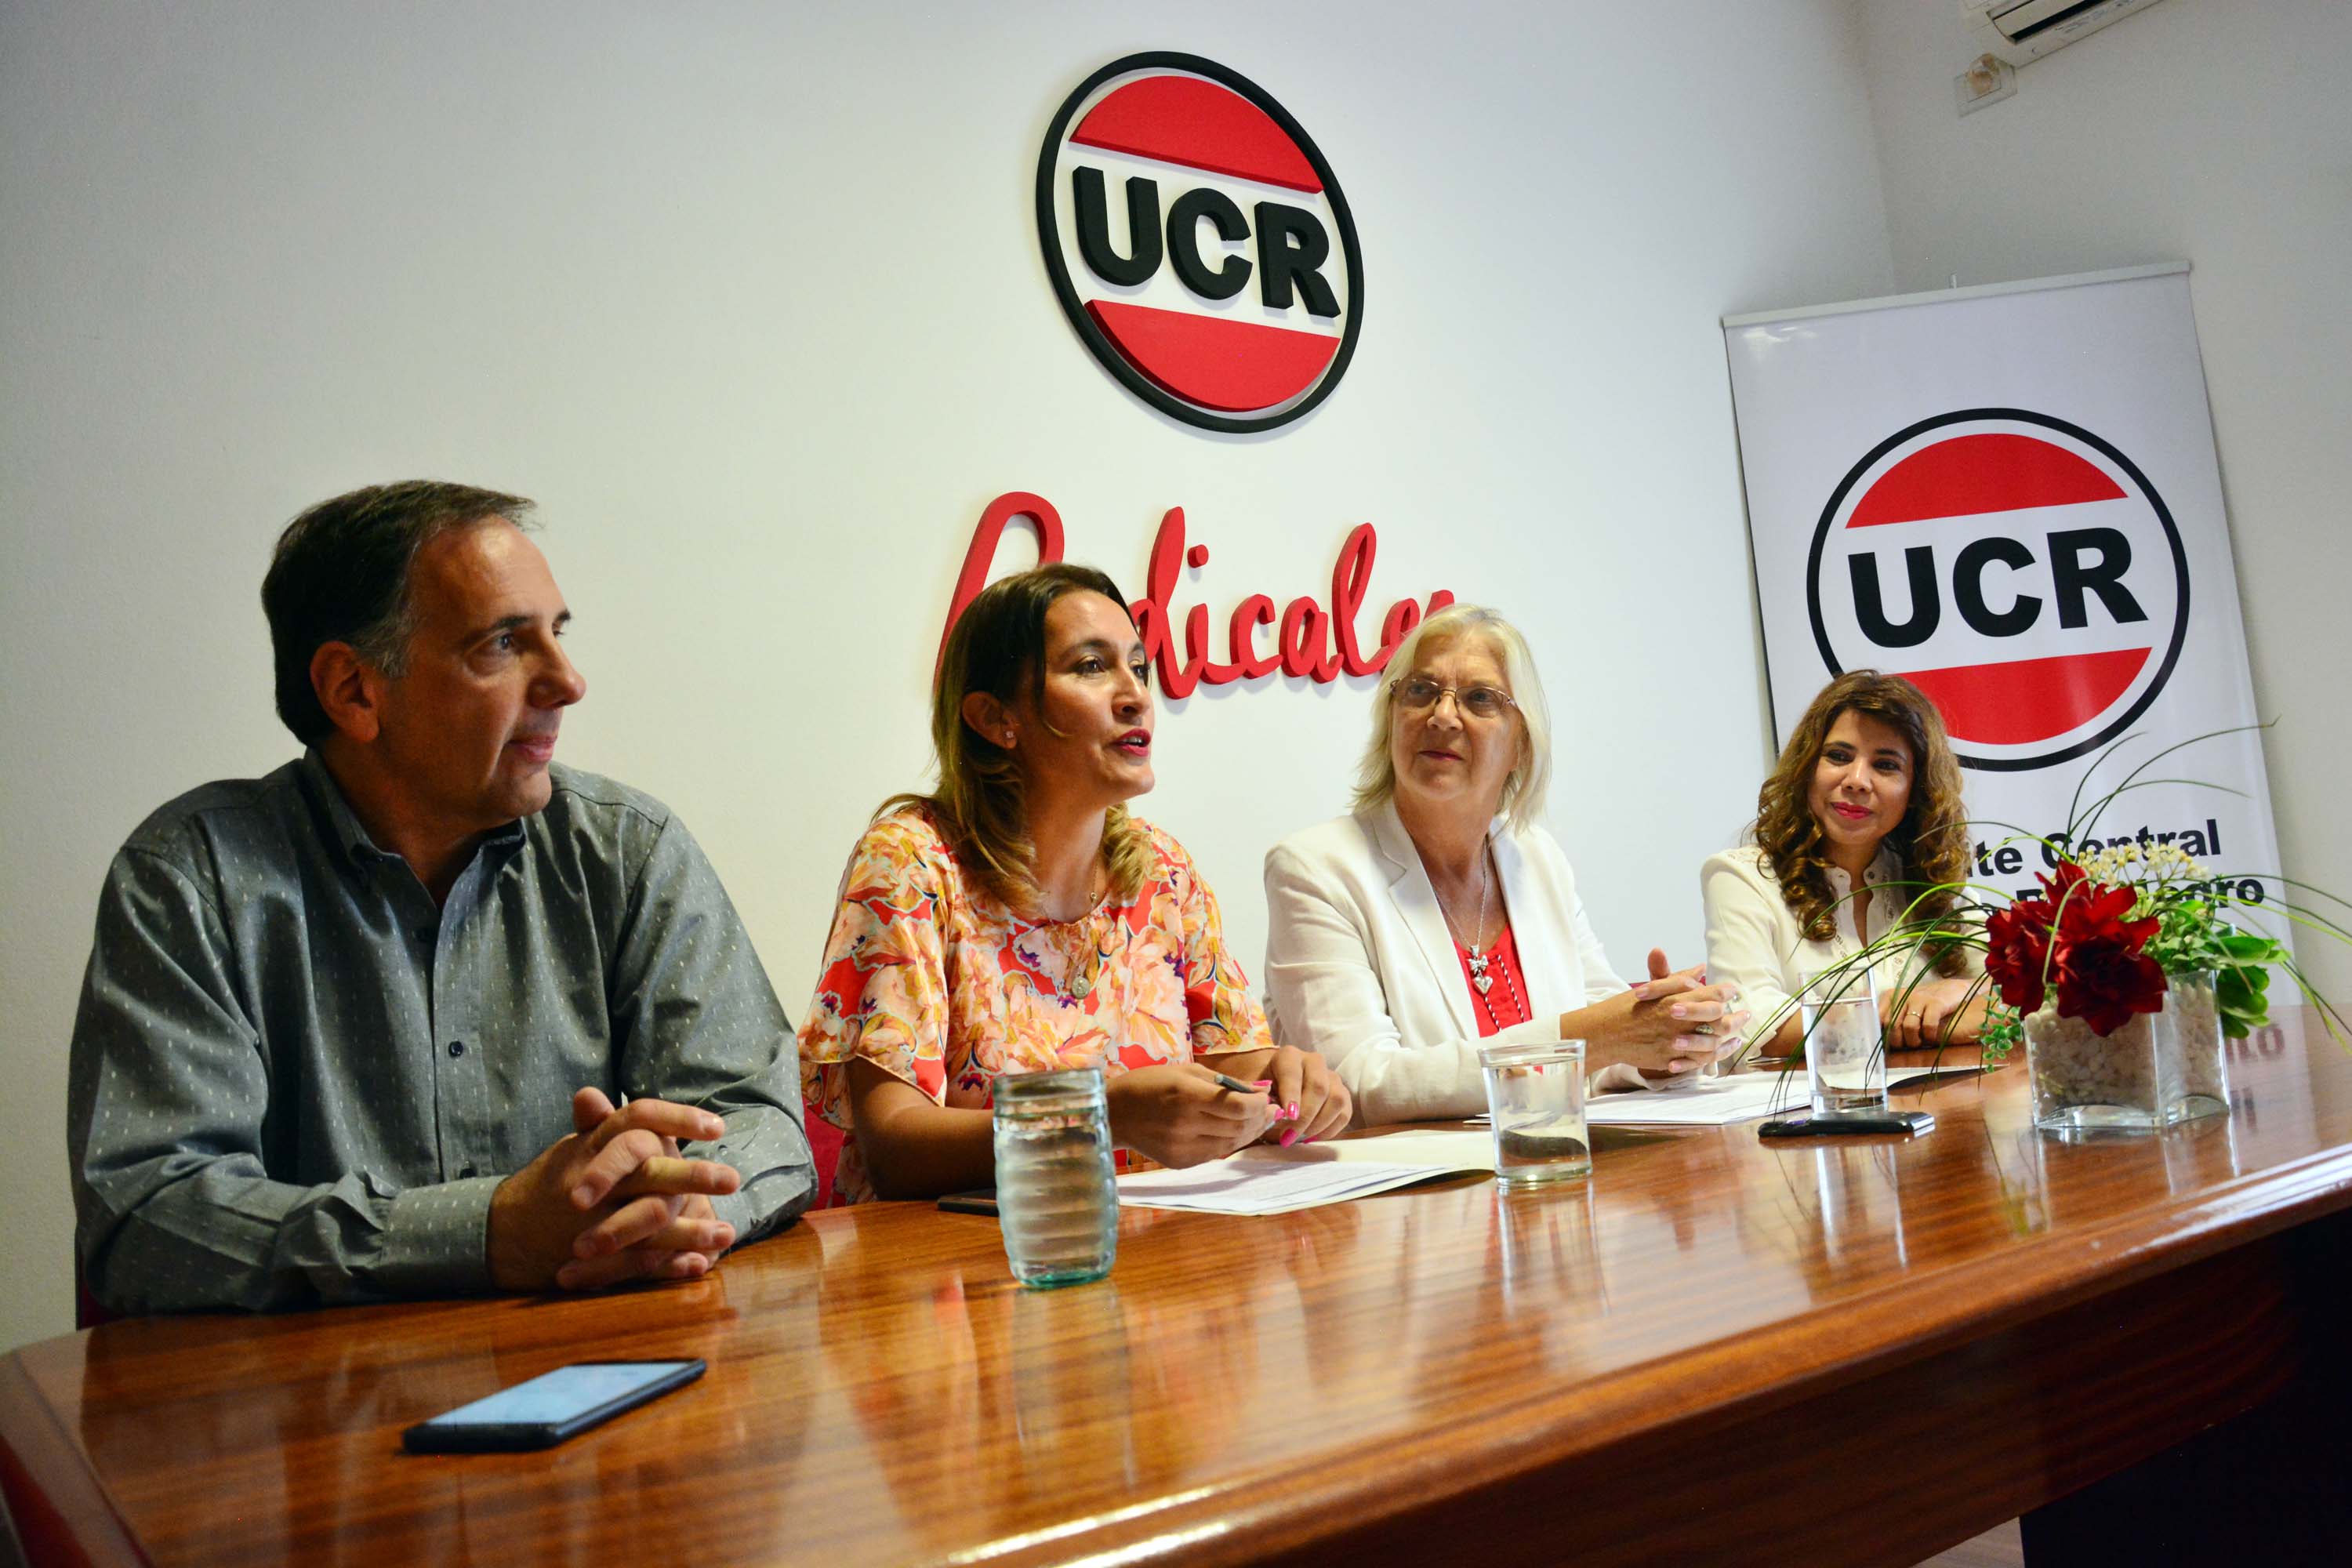 La presidenta de la UCR rionegrina, Lorena Matzen, firmó un convenio de capacitacion con la fundacion Alem. Foto: Marcelo Ochoa.